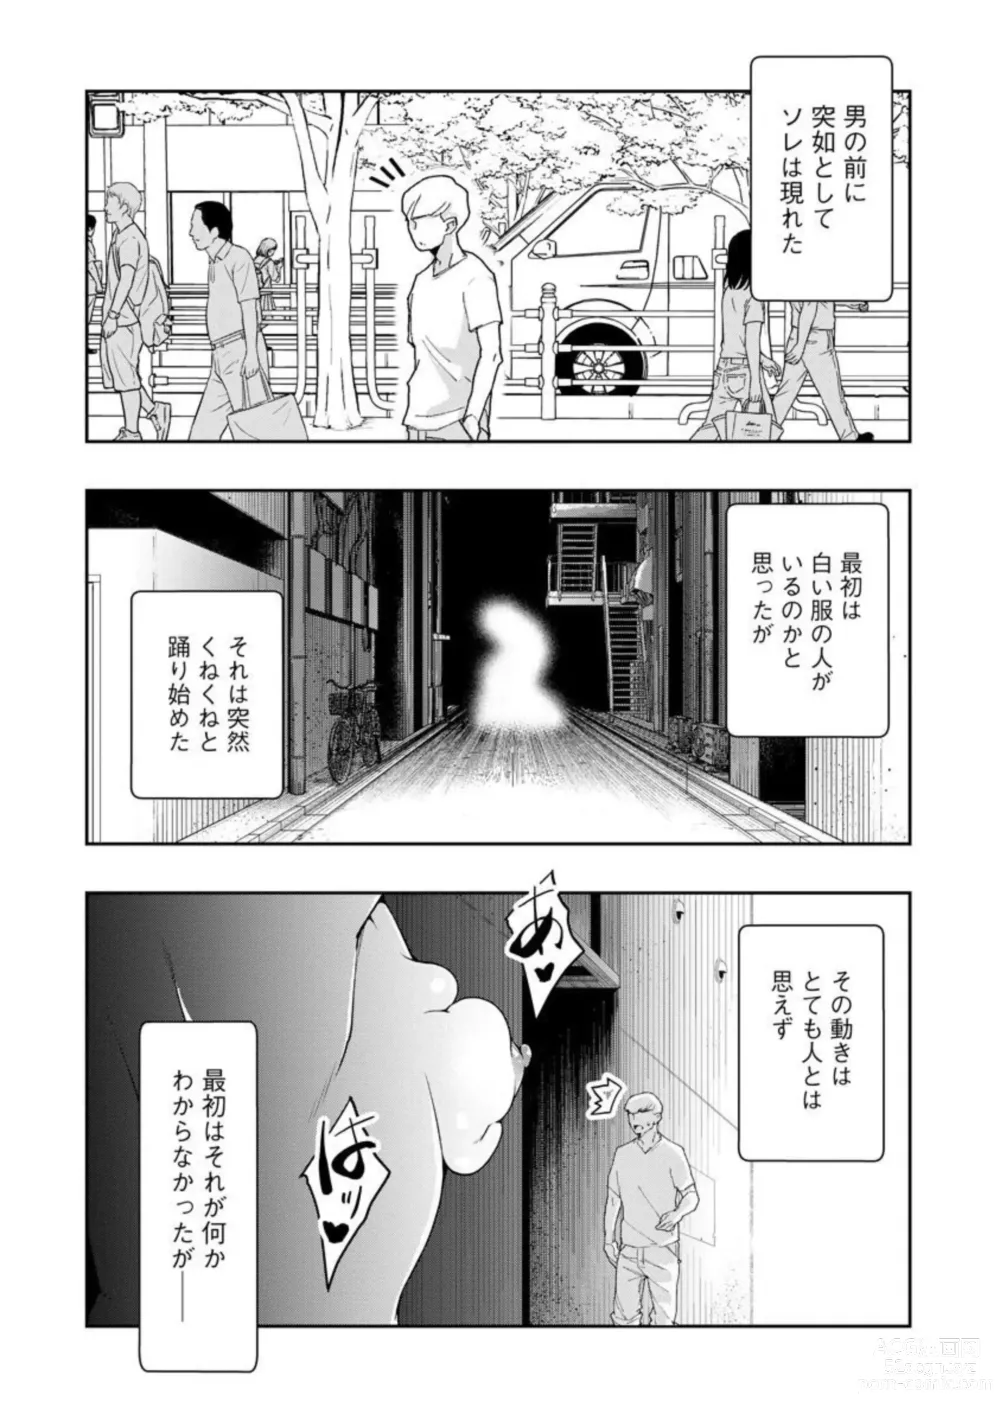 Page 4 of manga Kai 淫 Anata no Mono de Ikasetekudasai … Hontōha Yarashī Toshi Densetsu 1